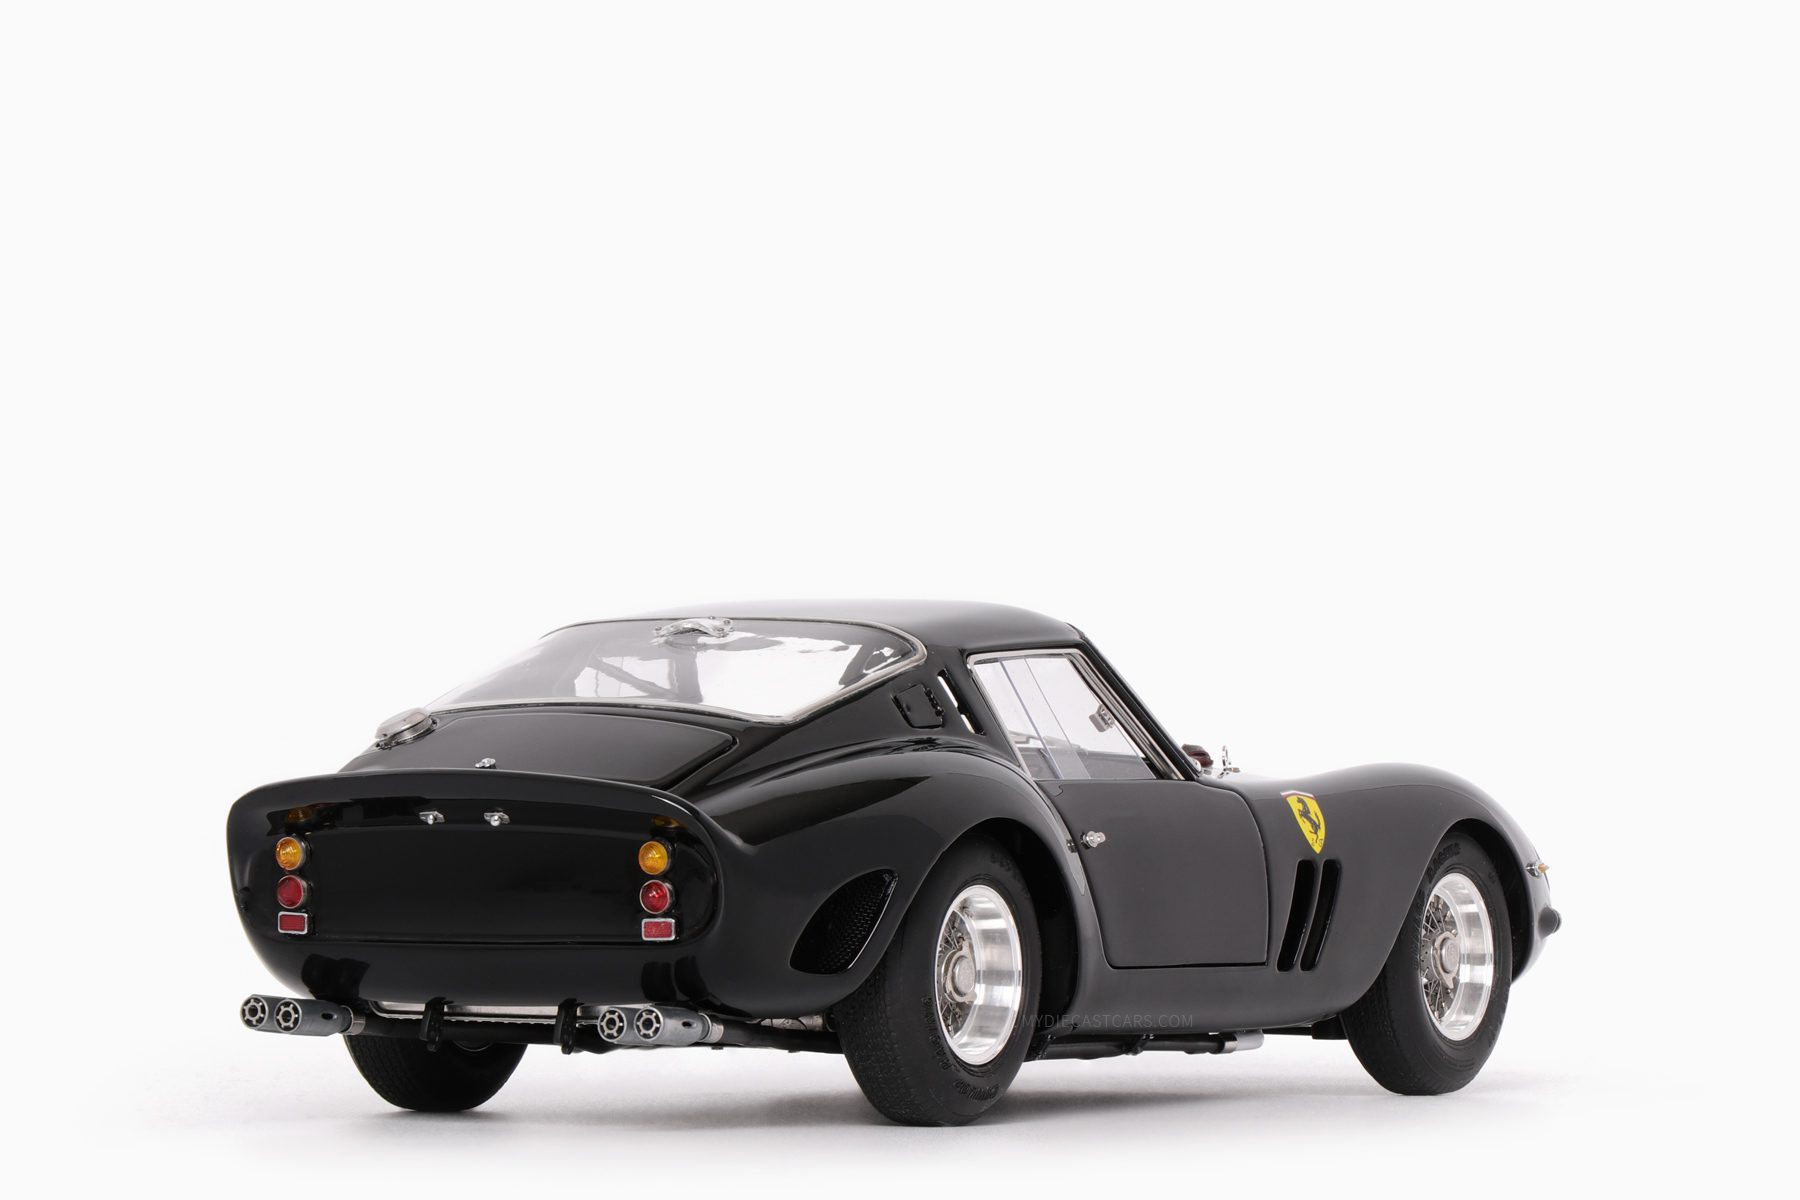 Ferrari 250 GTO 1962 Black 1:18 by CMC